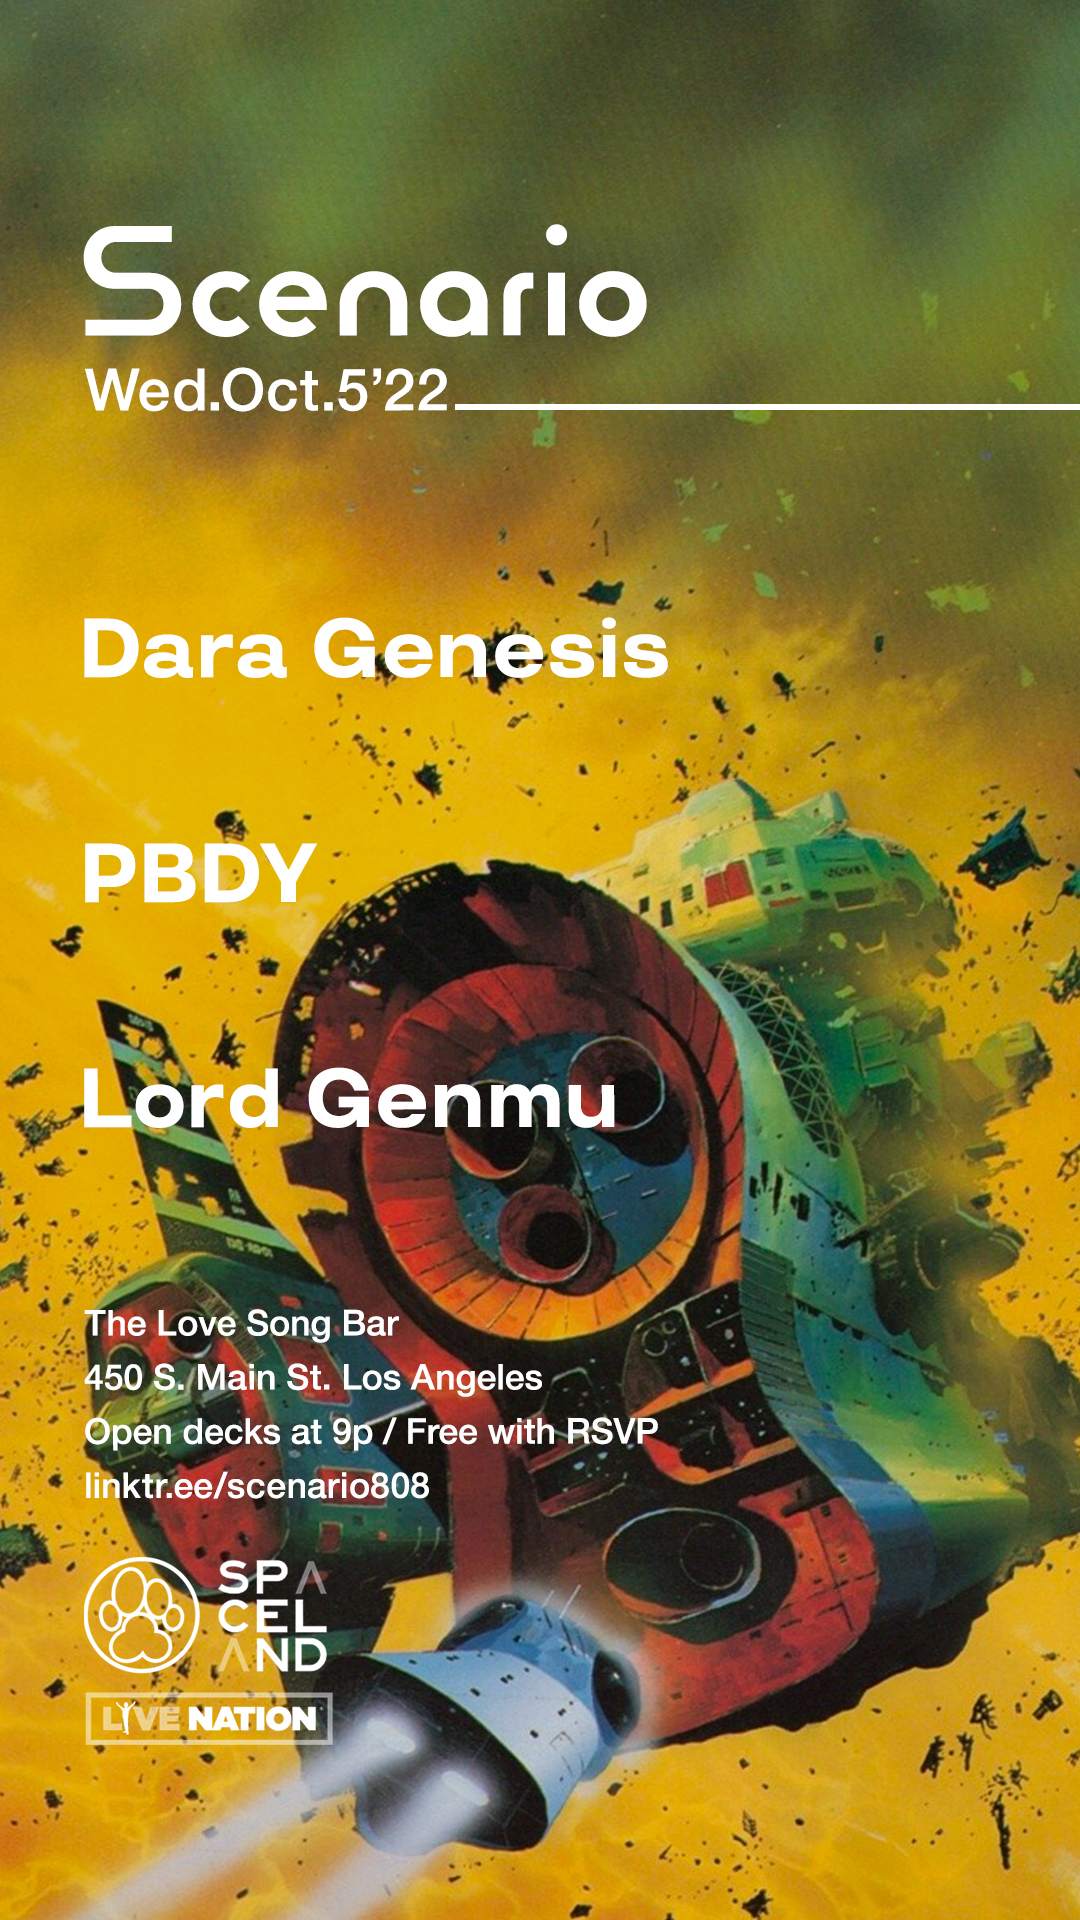 Scenario - Dara Genesis, PBDY, Lord Genmu - フライヤー表